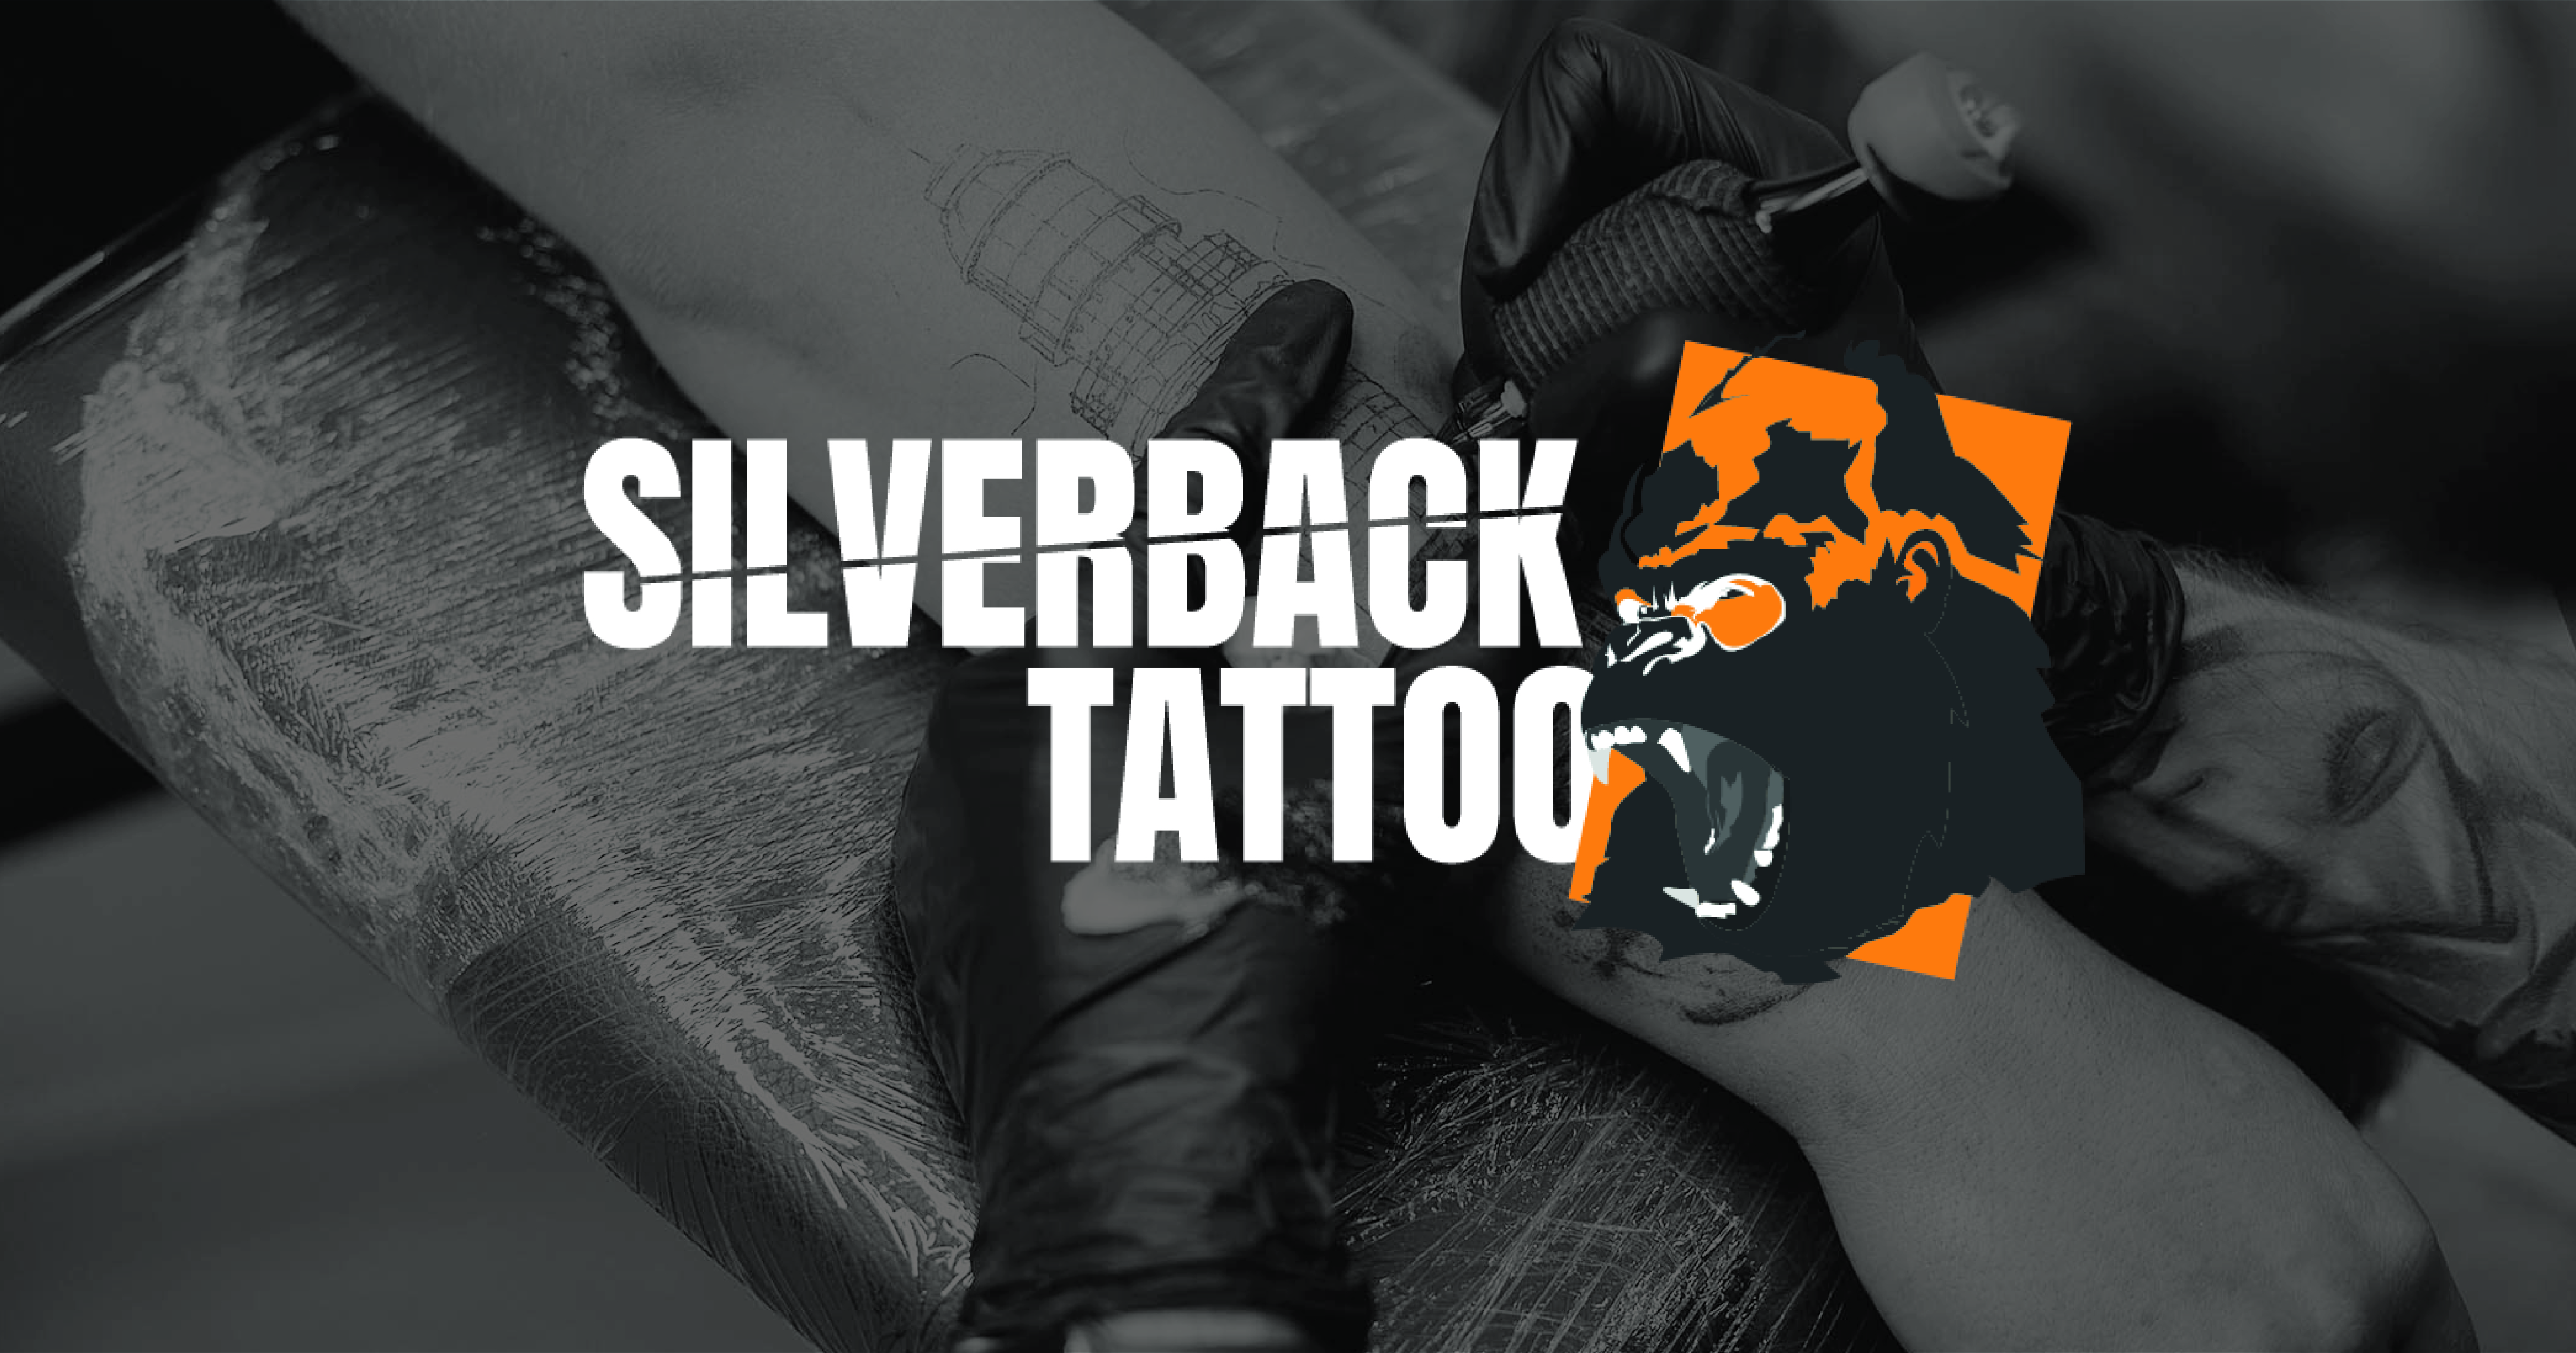 Silverback gorilla tattoo designs | bobettecicuvole1981's Ownd